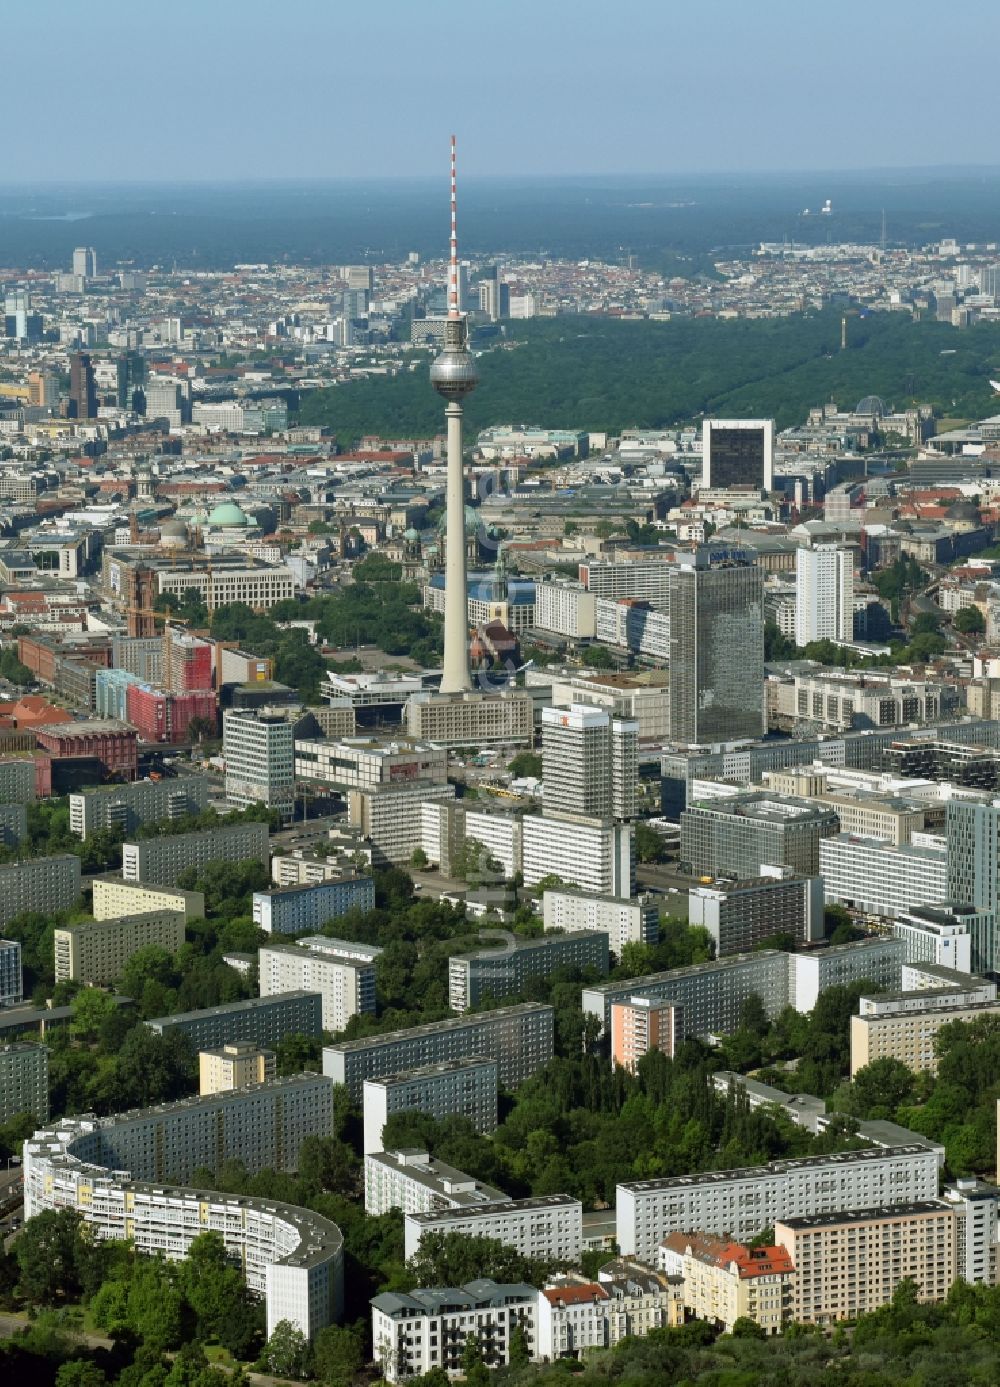 Luftaufnahme Berlin - Stadtzentrum im Innenstadtbereich Ost am Berliner Fernsehturm im Ortsteil Mitte in Berlin, Deutschland